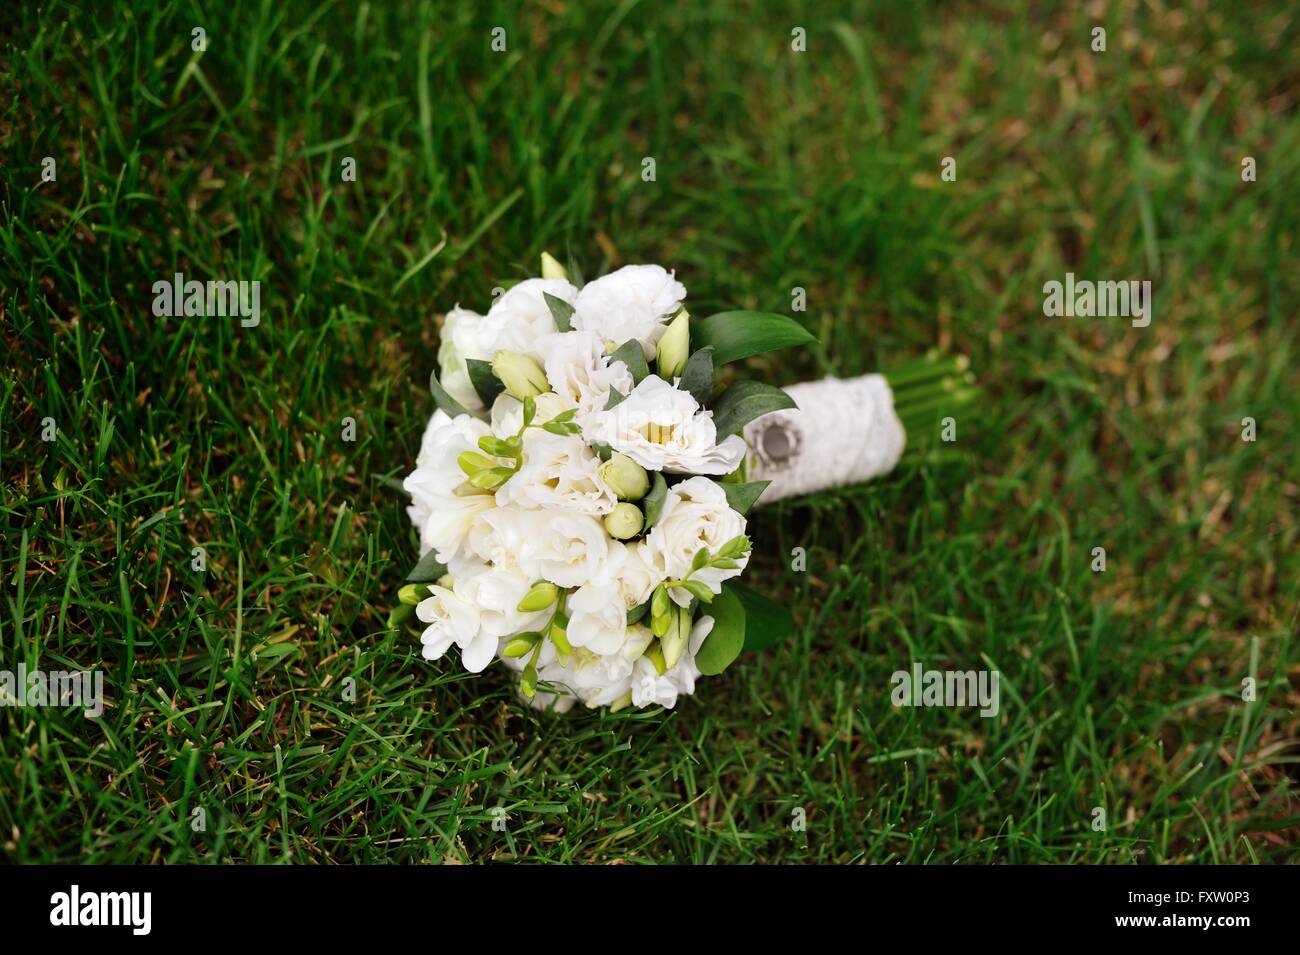 Boda nupcial bouquet blanco sobre la hierba verde Foto de stock